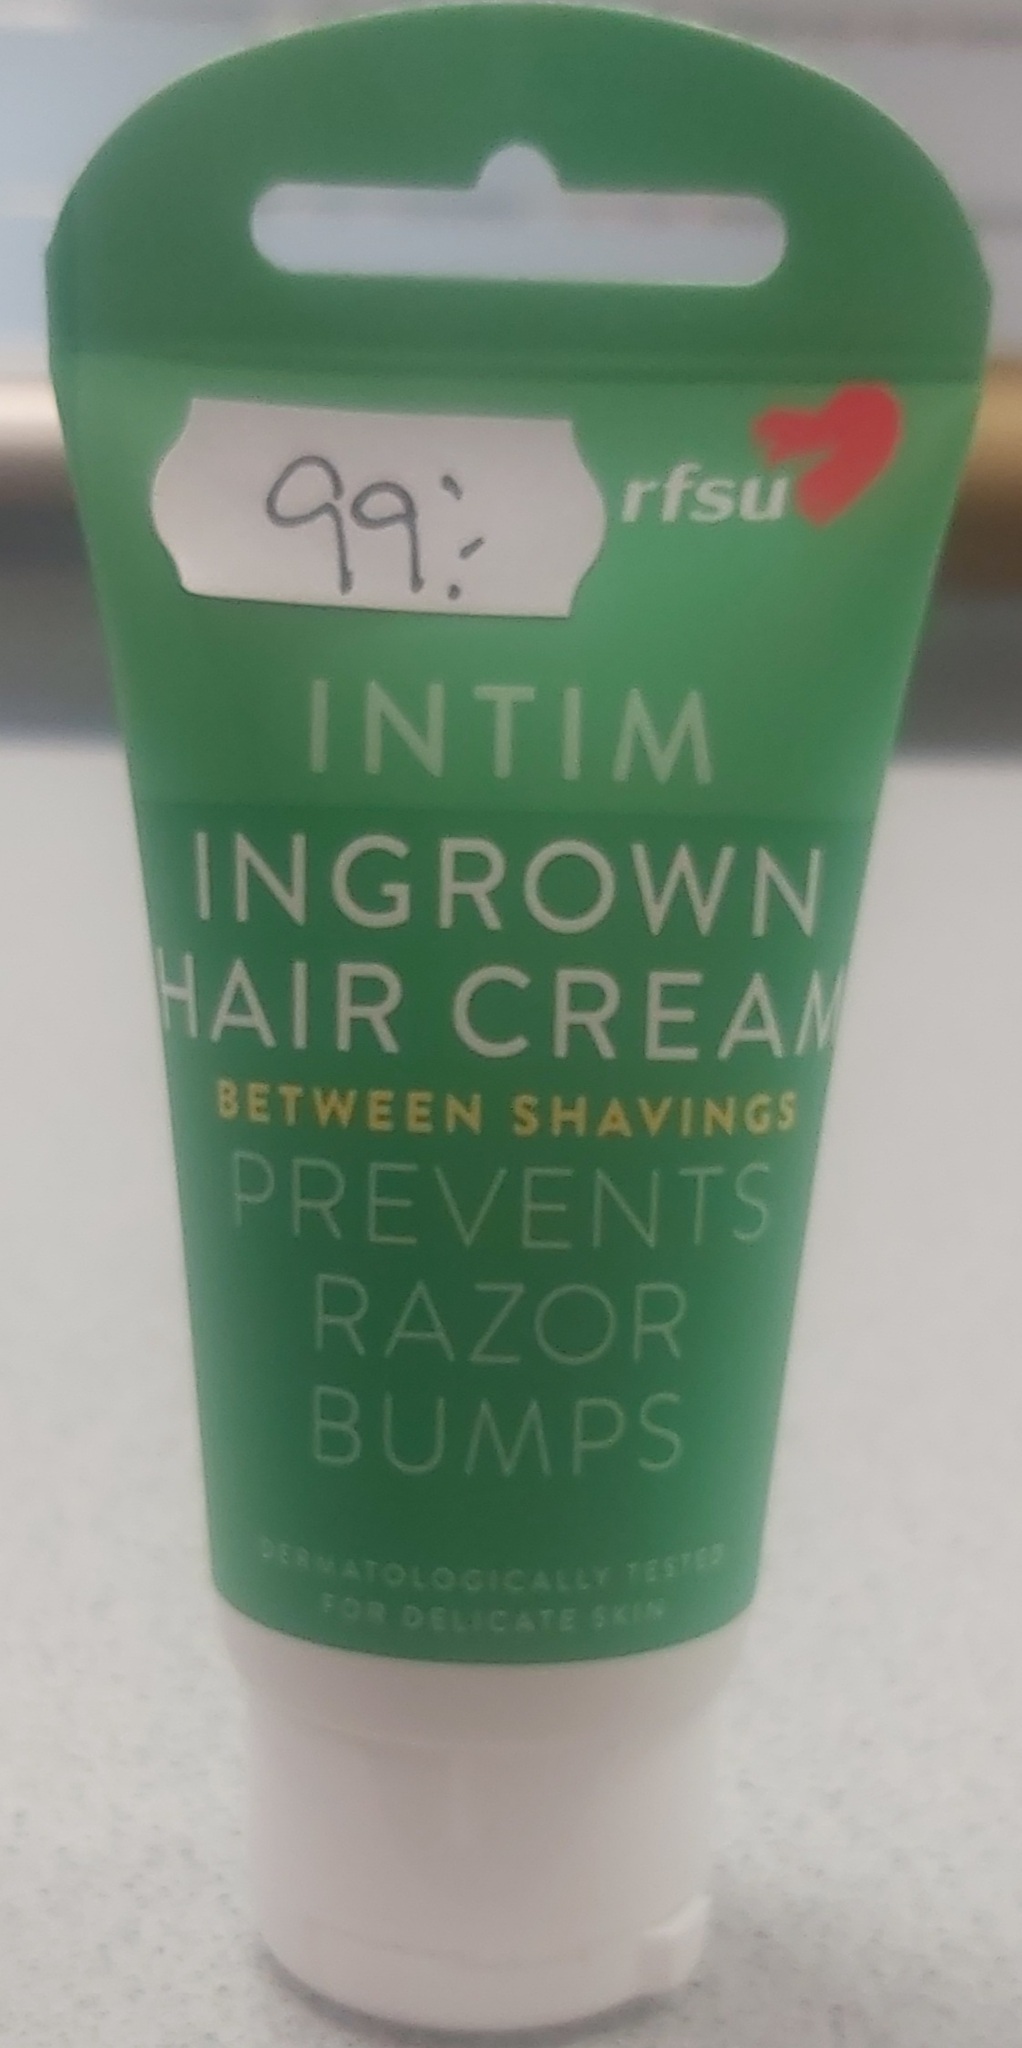 Intim Ingrown Hair Cream